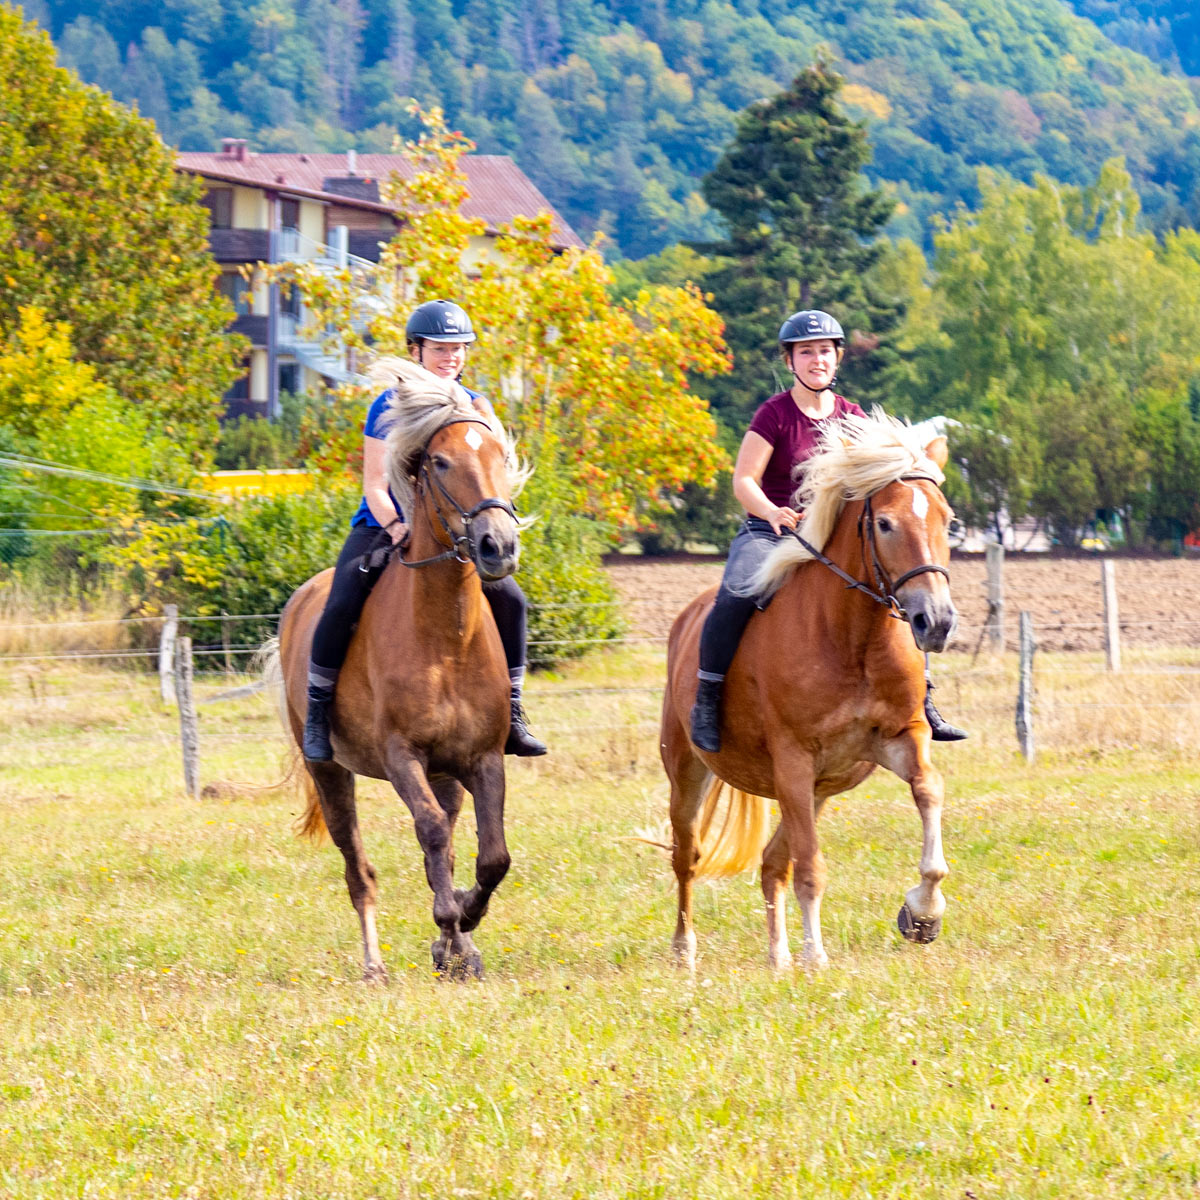 Reiterferien im Sauerland - Reiterinnen reiten auf zwei Pferden